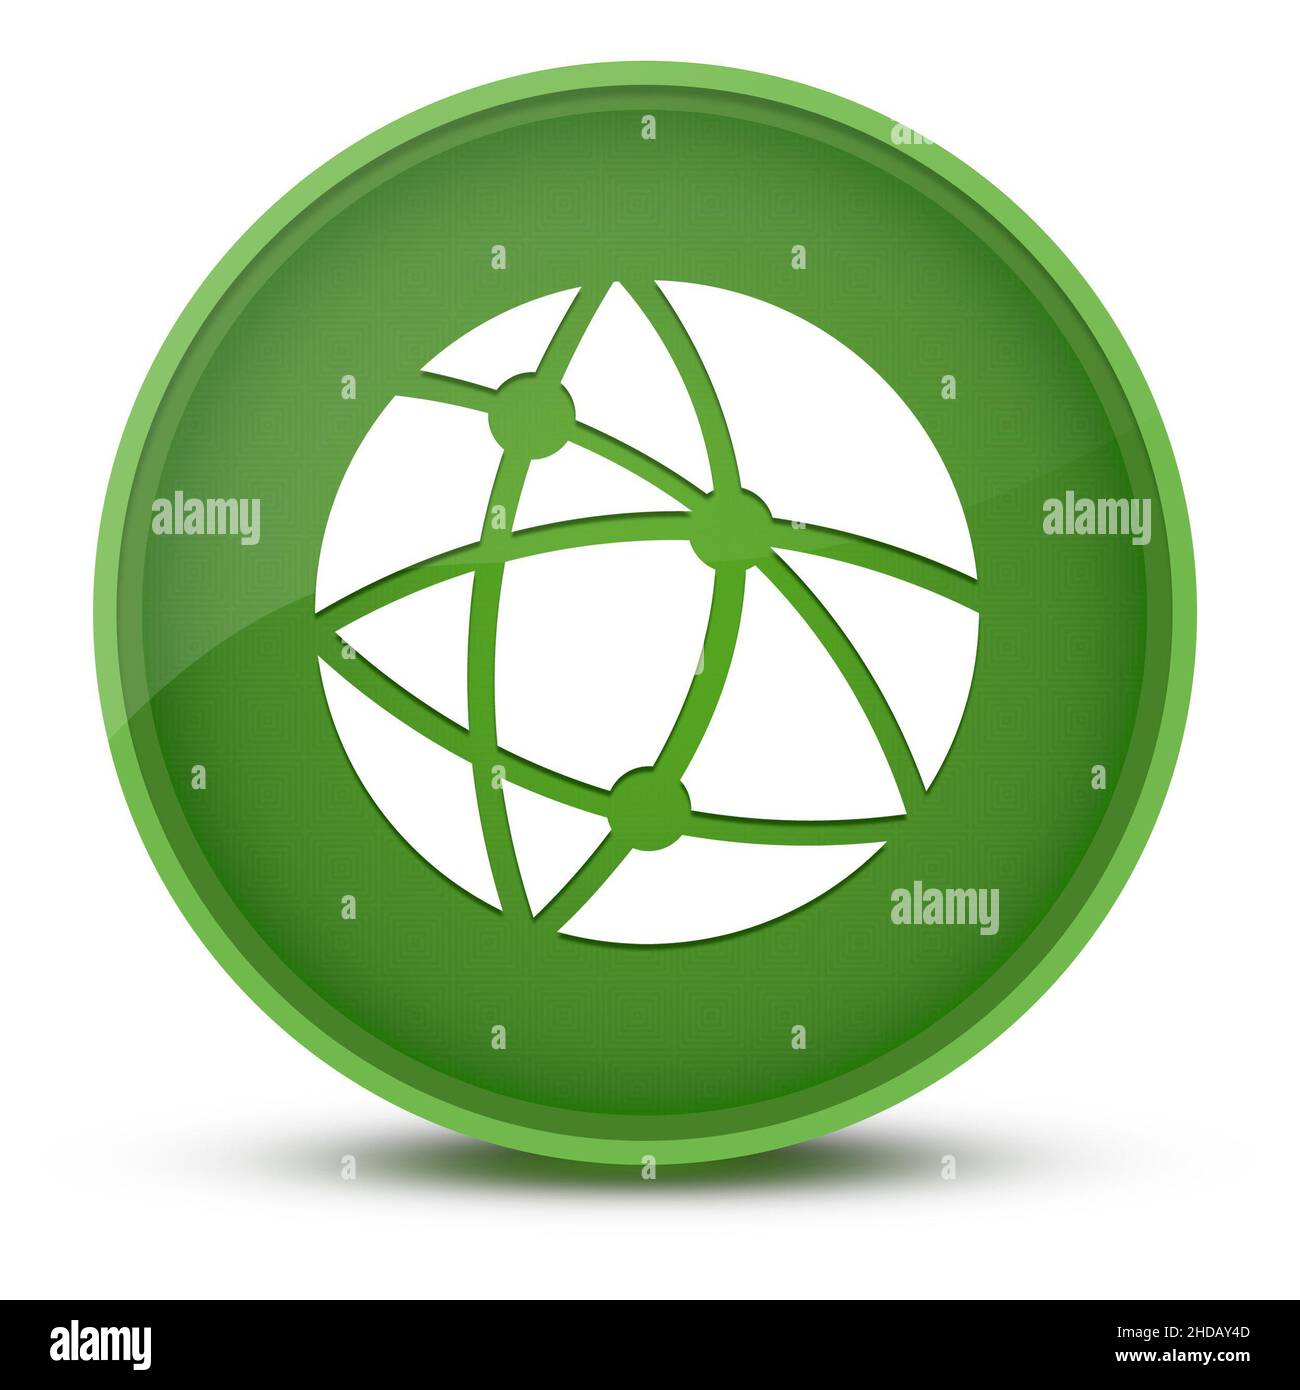 Technologie mondiale ou réseau social luxueux bouton rond vert brillant illustration abstraite Banque D'Images